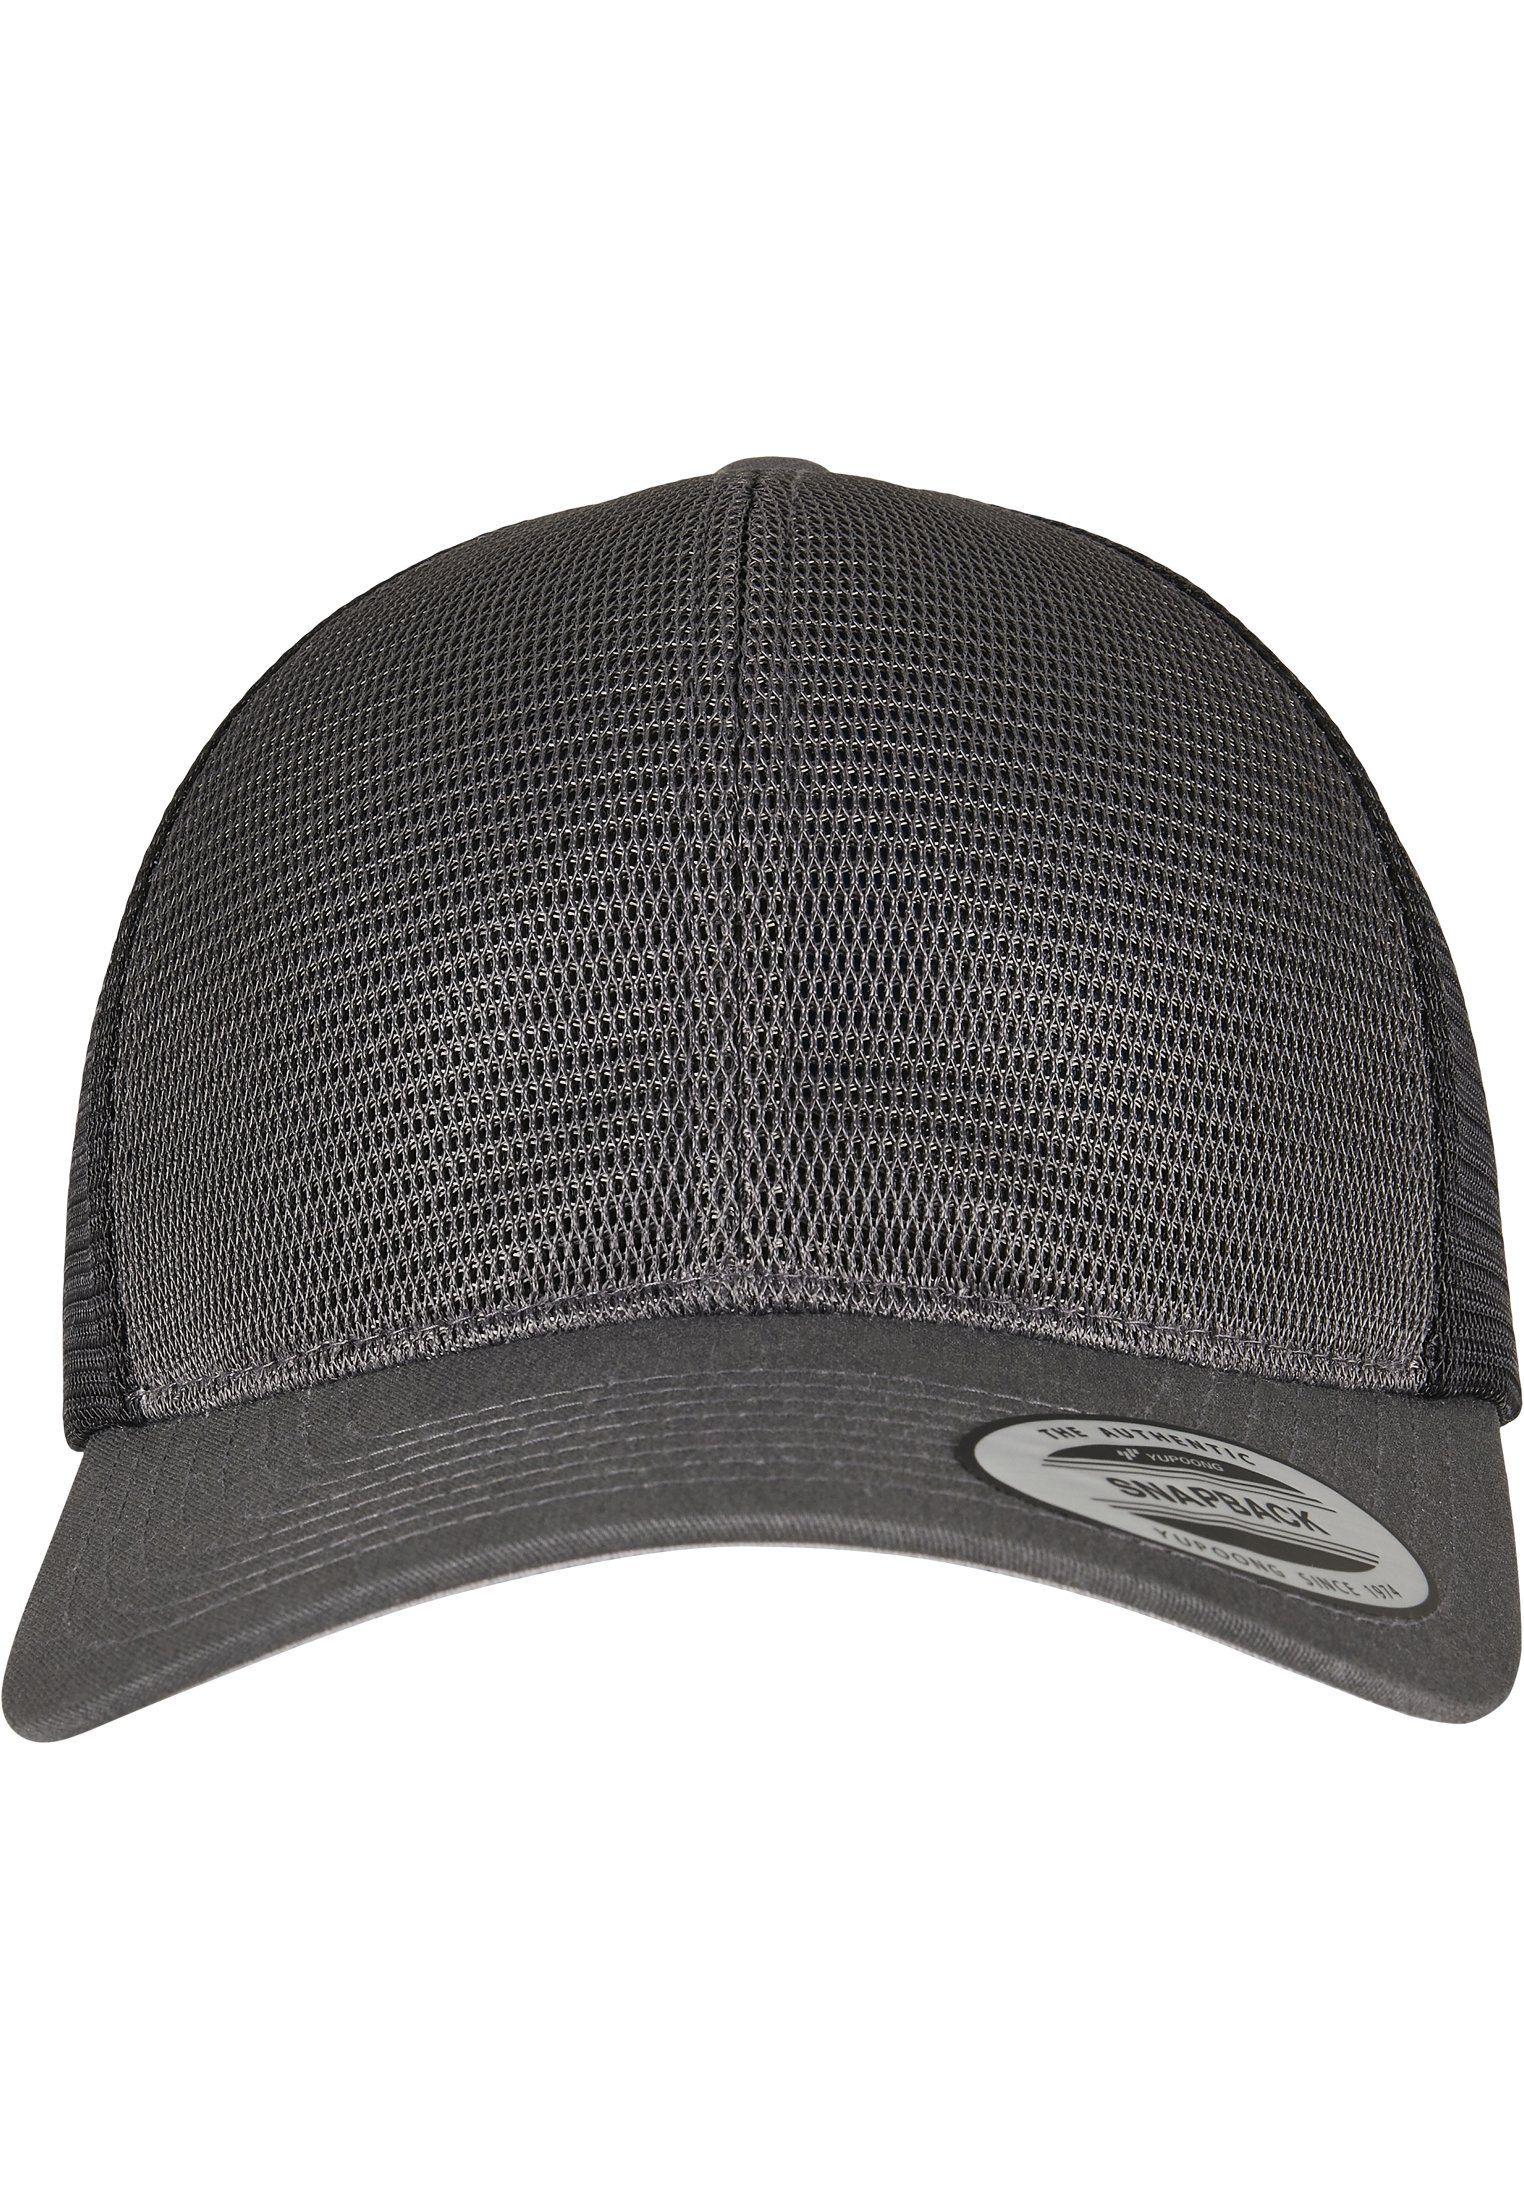 Cap Flexfit Cap 360° 2-Tone charcoal/black Omnimesh Flex Accessoires